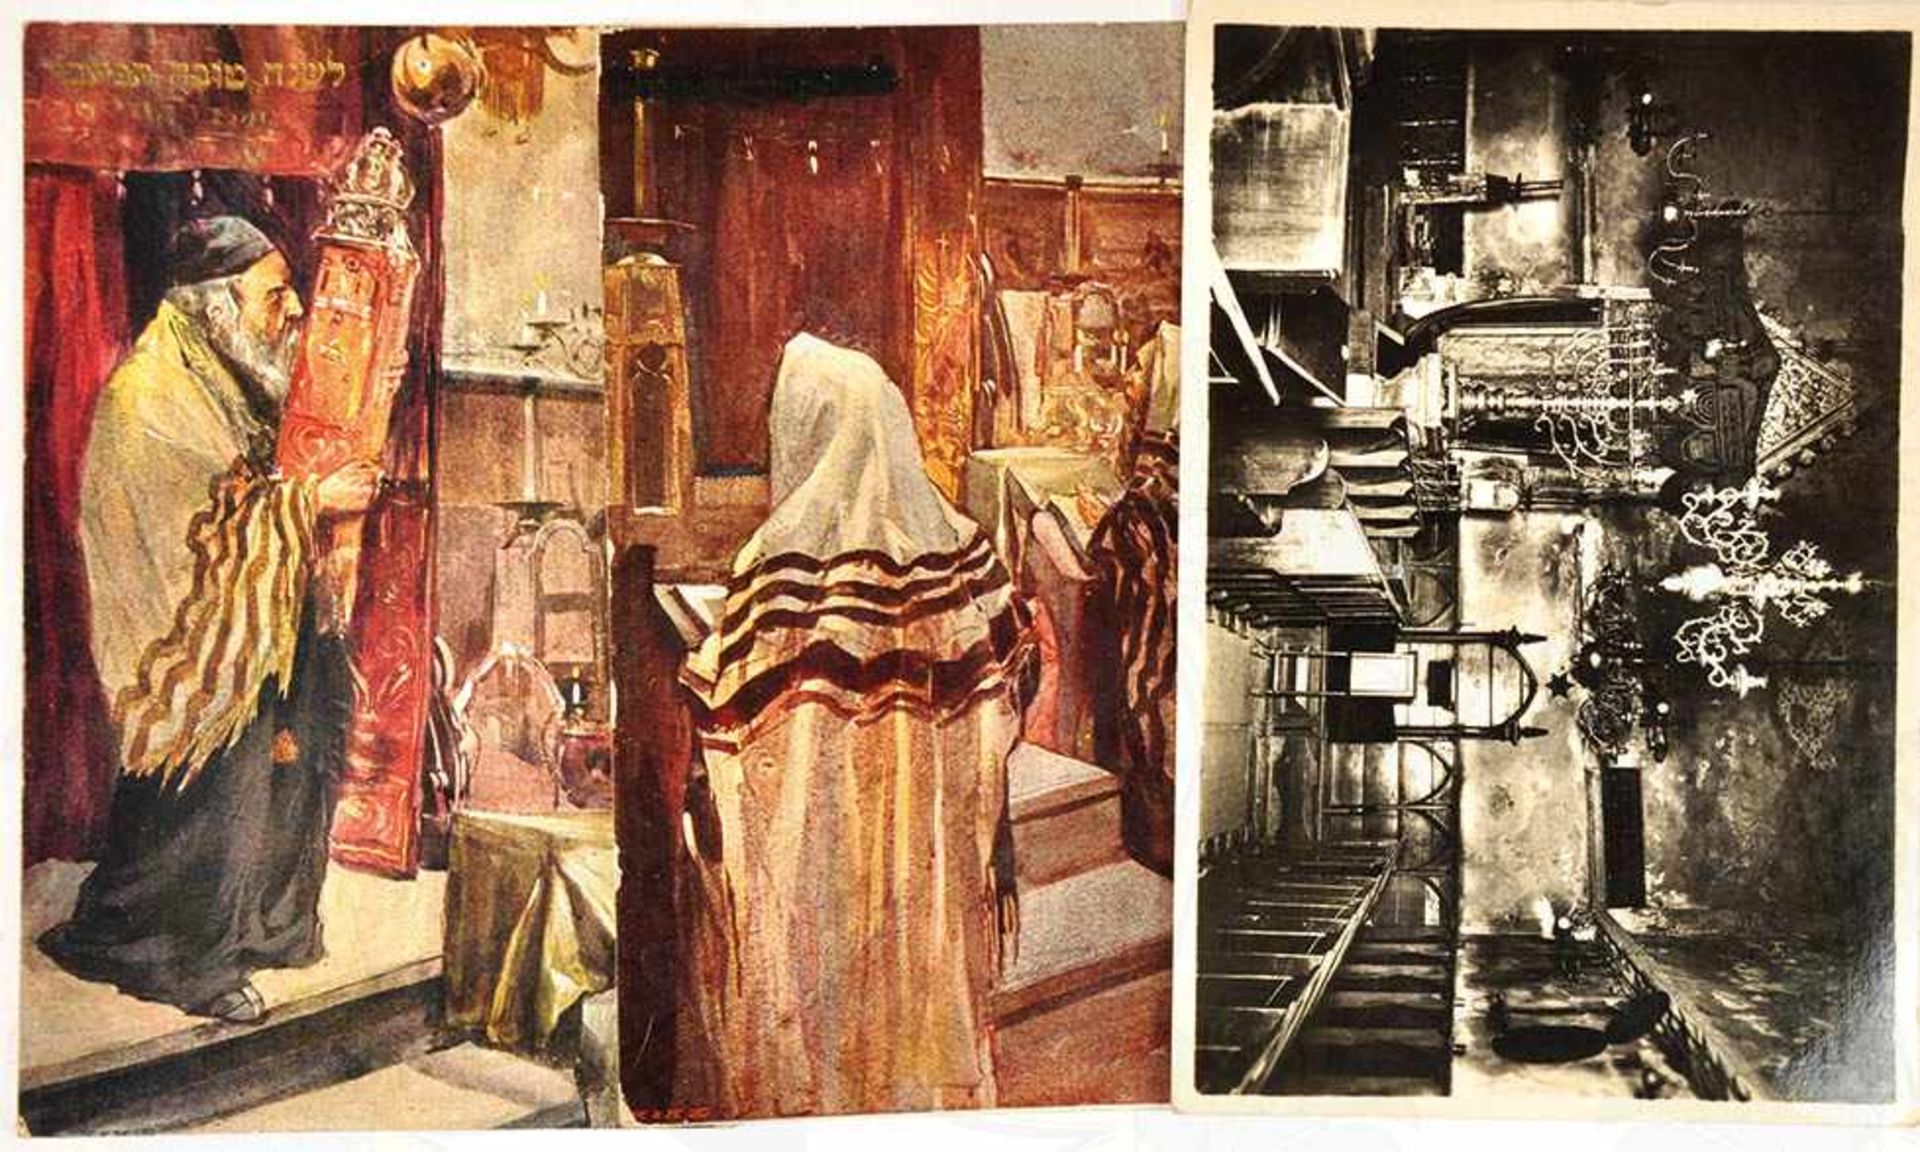 3 AK: Foto-AK Innenansicht d. Altneu-Synagoge Prag, um 1935, rs. hebräische Bez.; 2 farbige